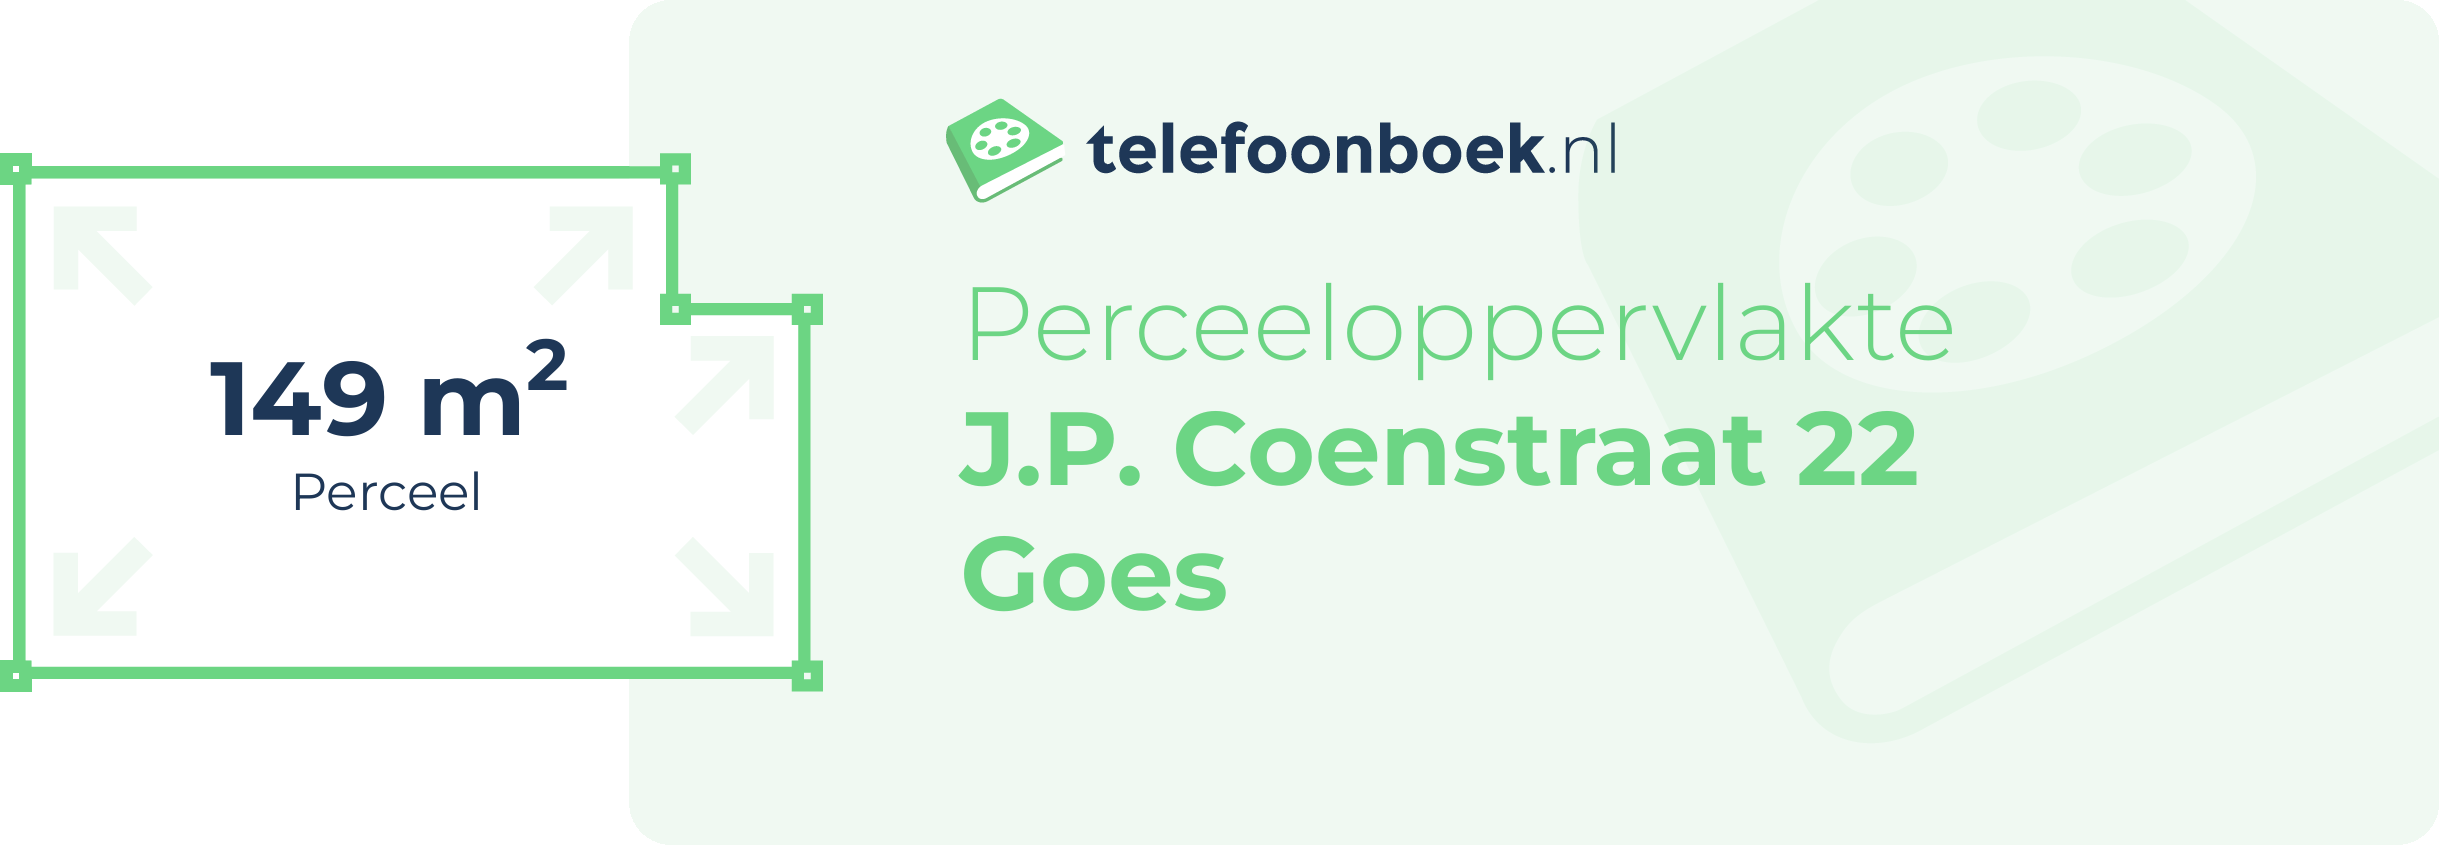 Perceeloppervlakte J.P. Coenstraat 22 Goes